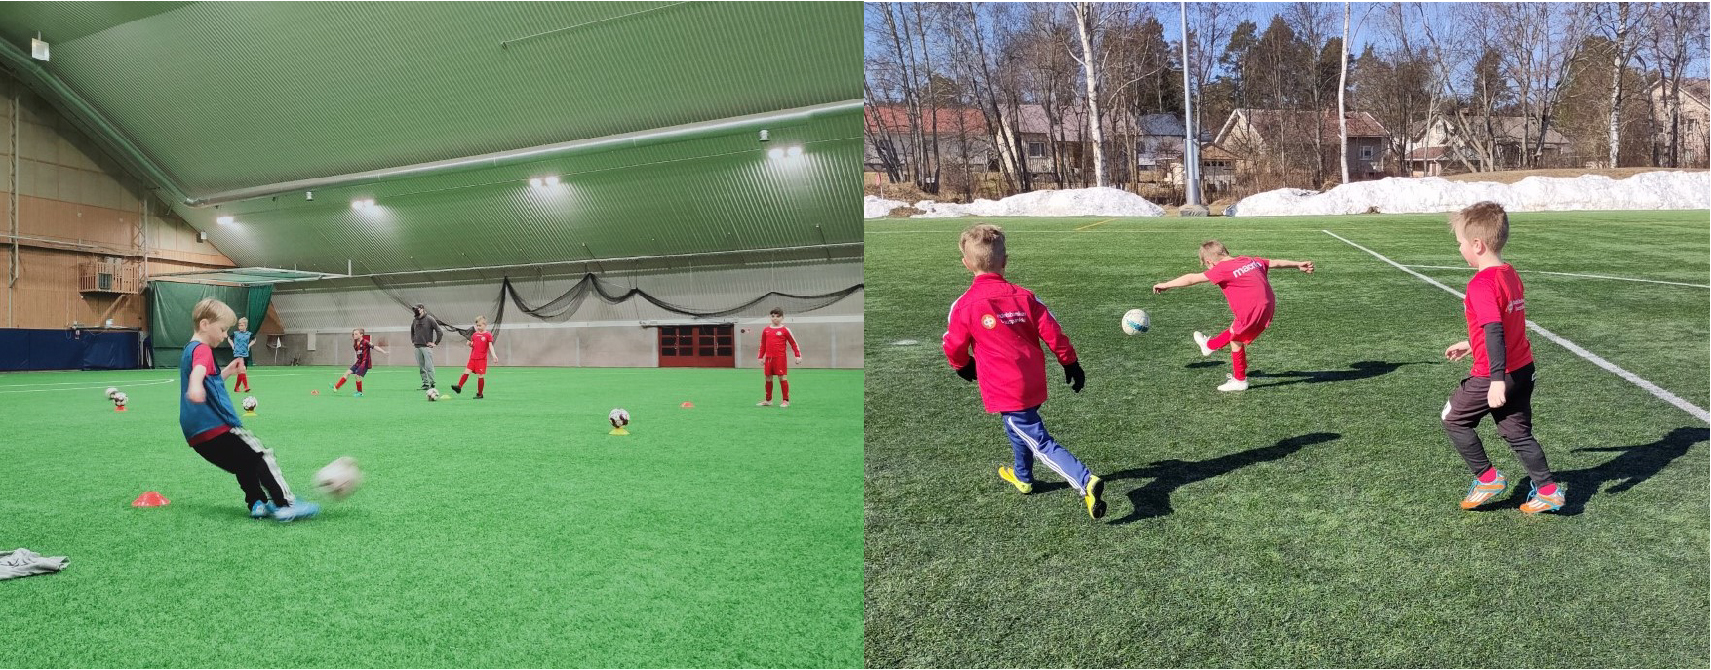 Prova på fotboll för 2012-2014 födda / Tule kokeilemaan jalkapalloa 2012-2014 -syntyneille